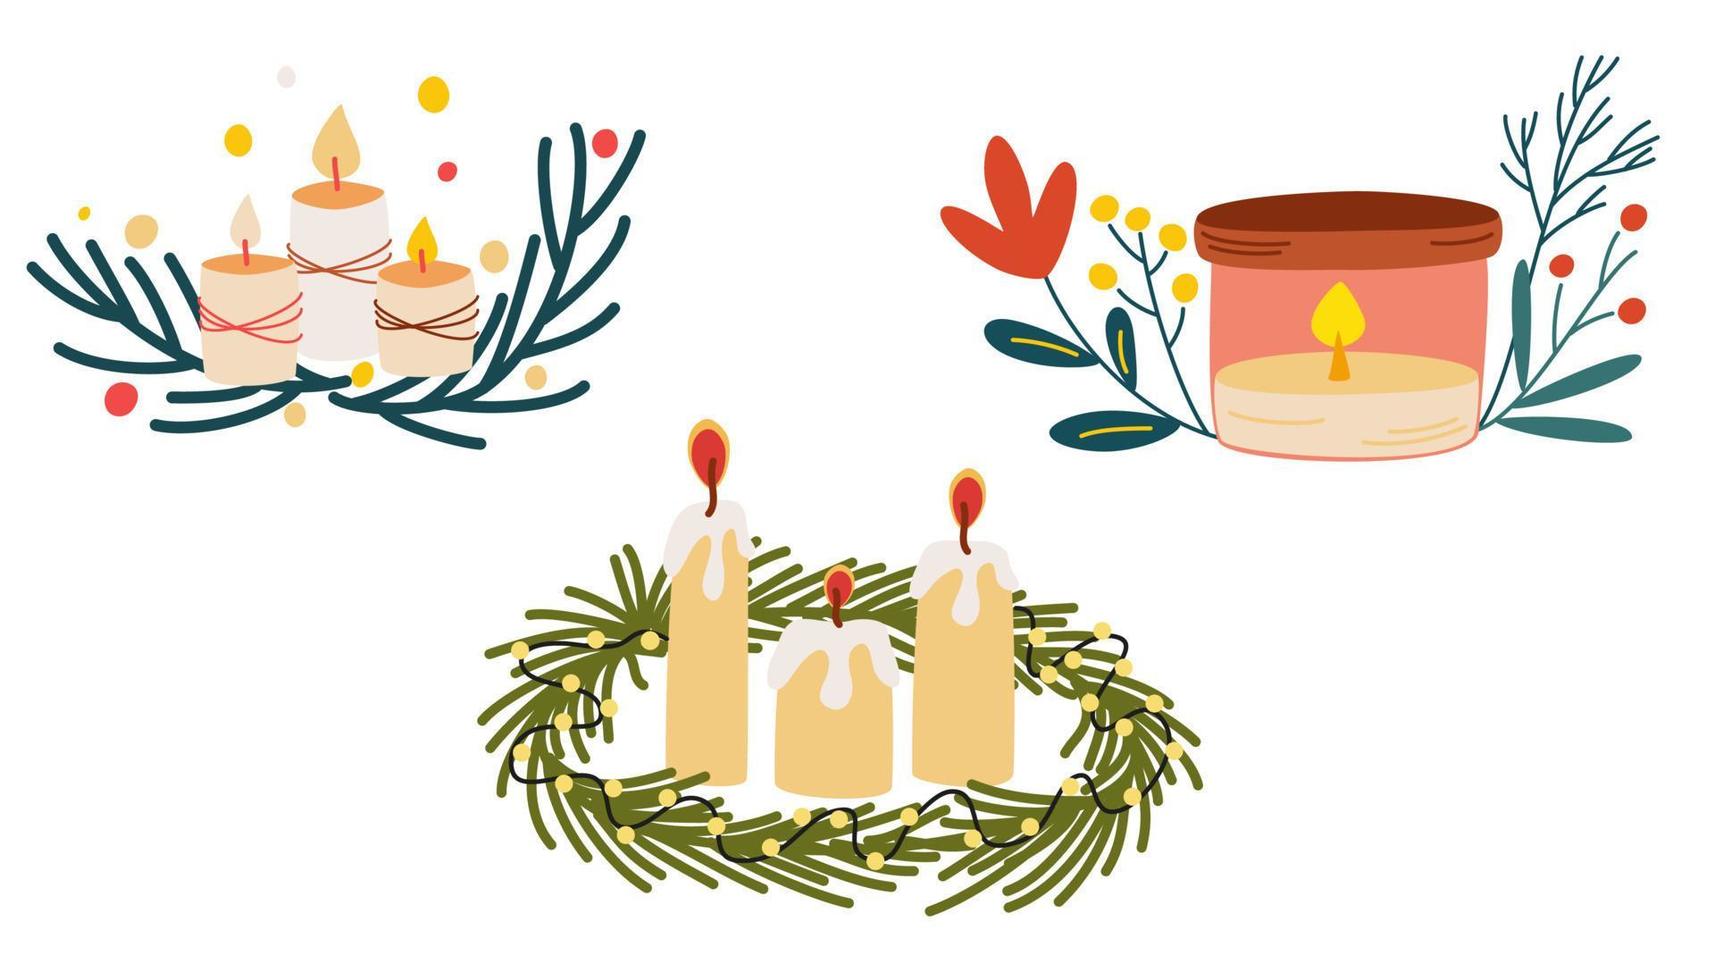 Kerzen gesetzt. Dekorative Wachskerzen für Entspannung, Inneneinrichtung, Urlaub und Weihnachten. Wachskerzen. hand gezeichnete vektorillustration lokalisiert auf dem weißen hintergrund. vektor